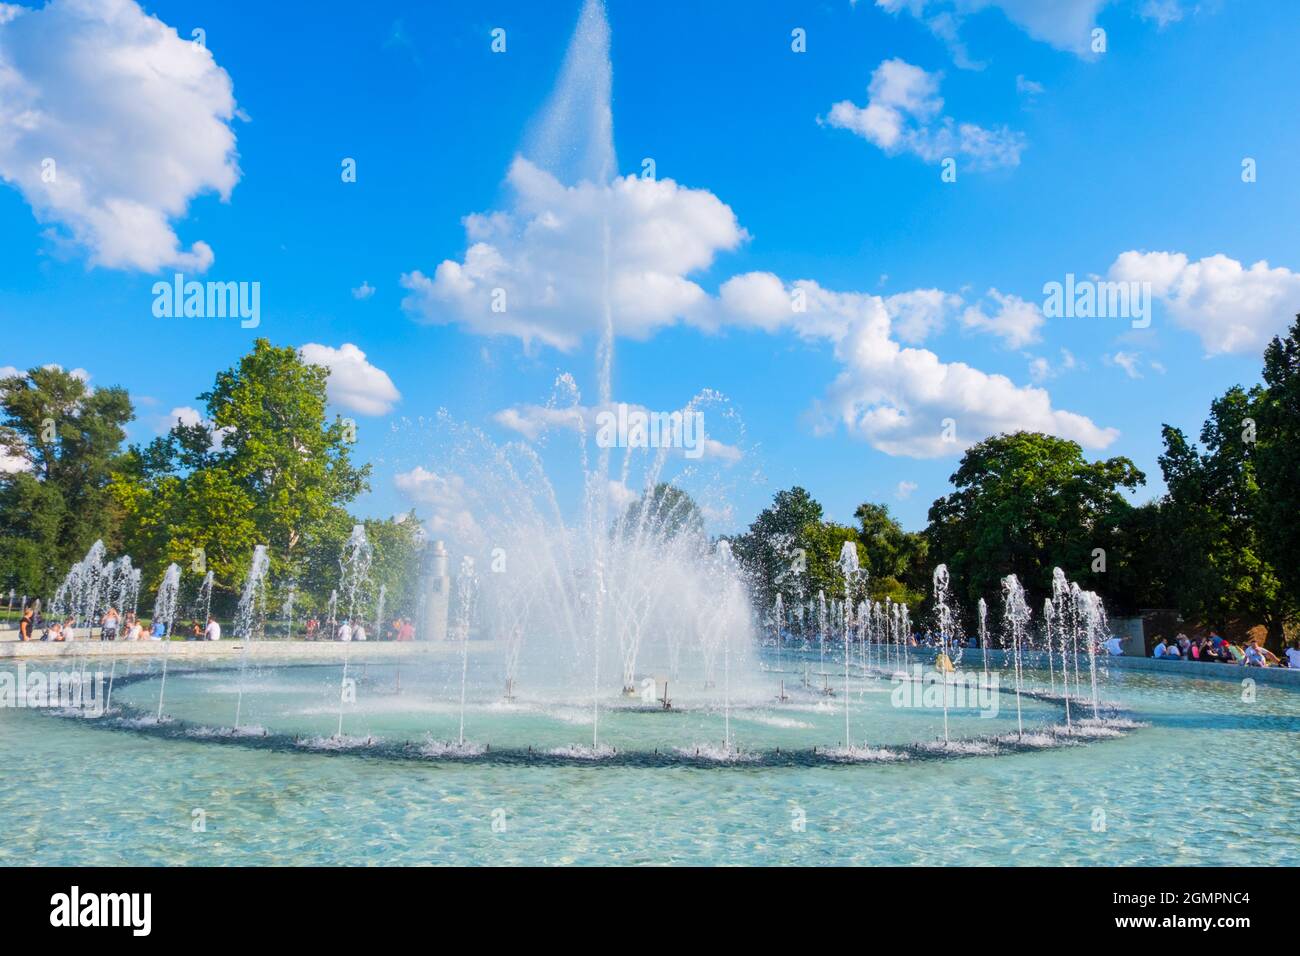 Multimedialny Park Fontann, Multimedia Fountain Park, Skwer 1 Dywizji Pancernej WP, Warsaw, Poland Stock Photo